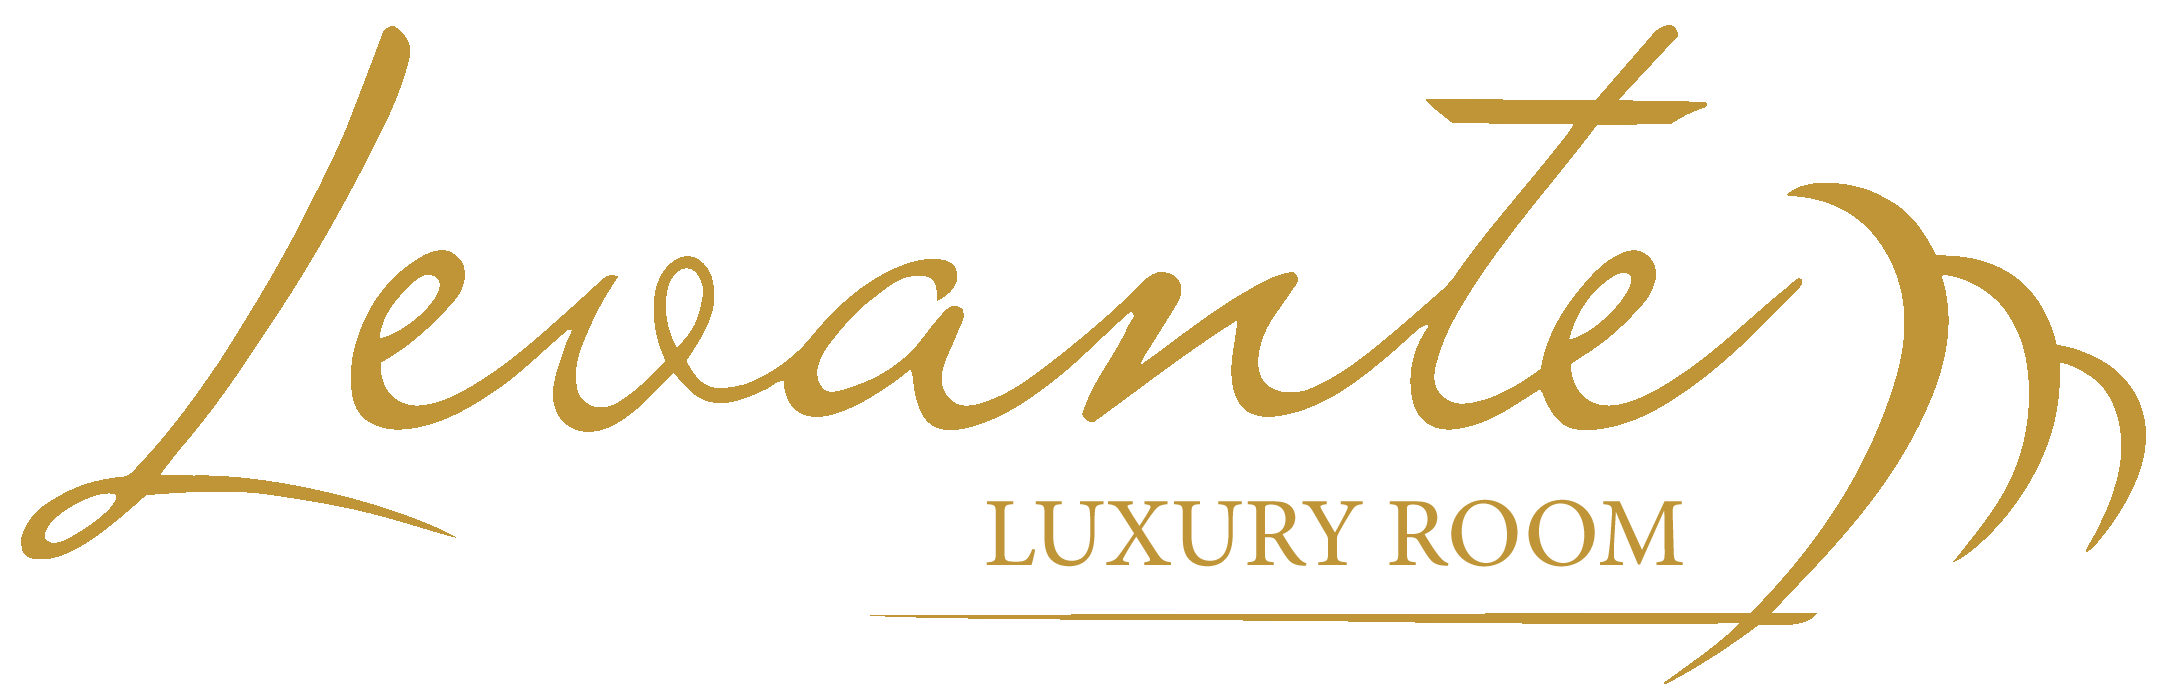 Levante luxury room